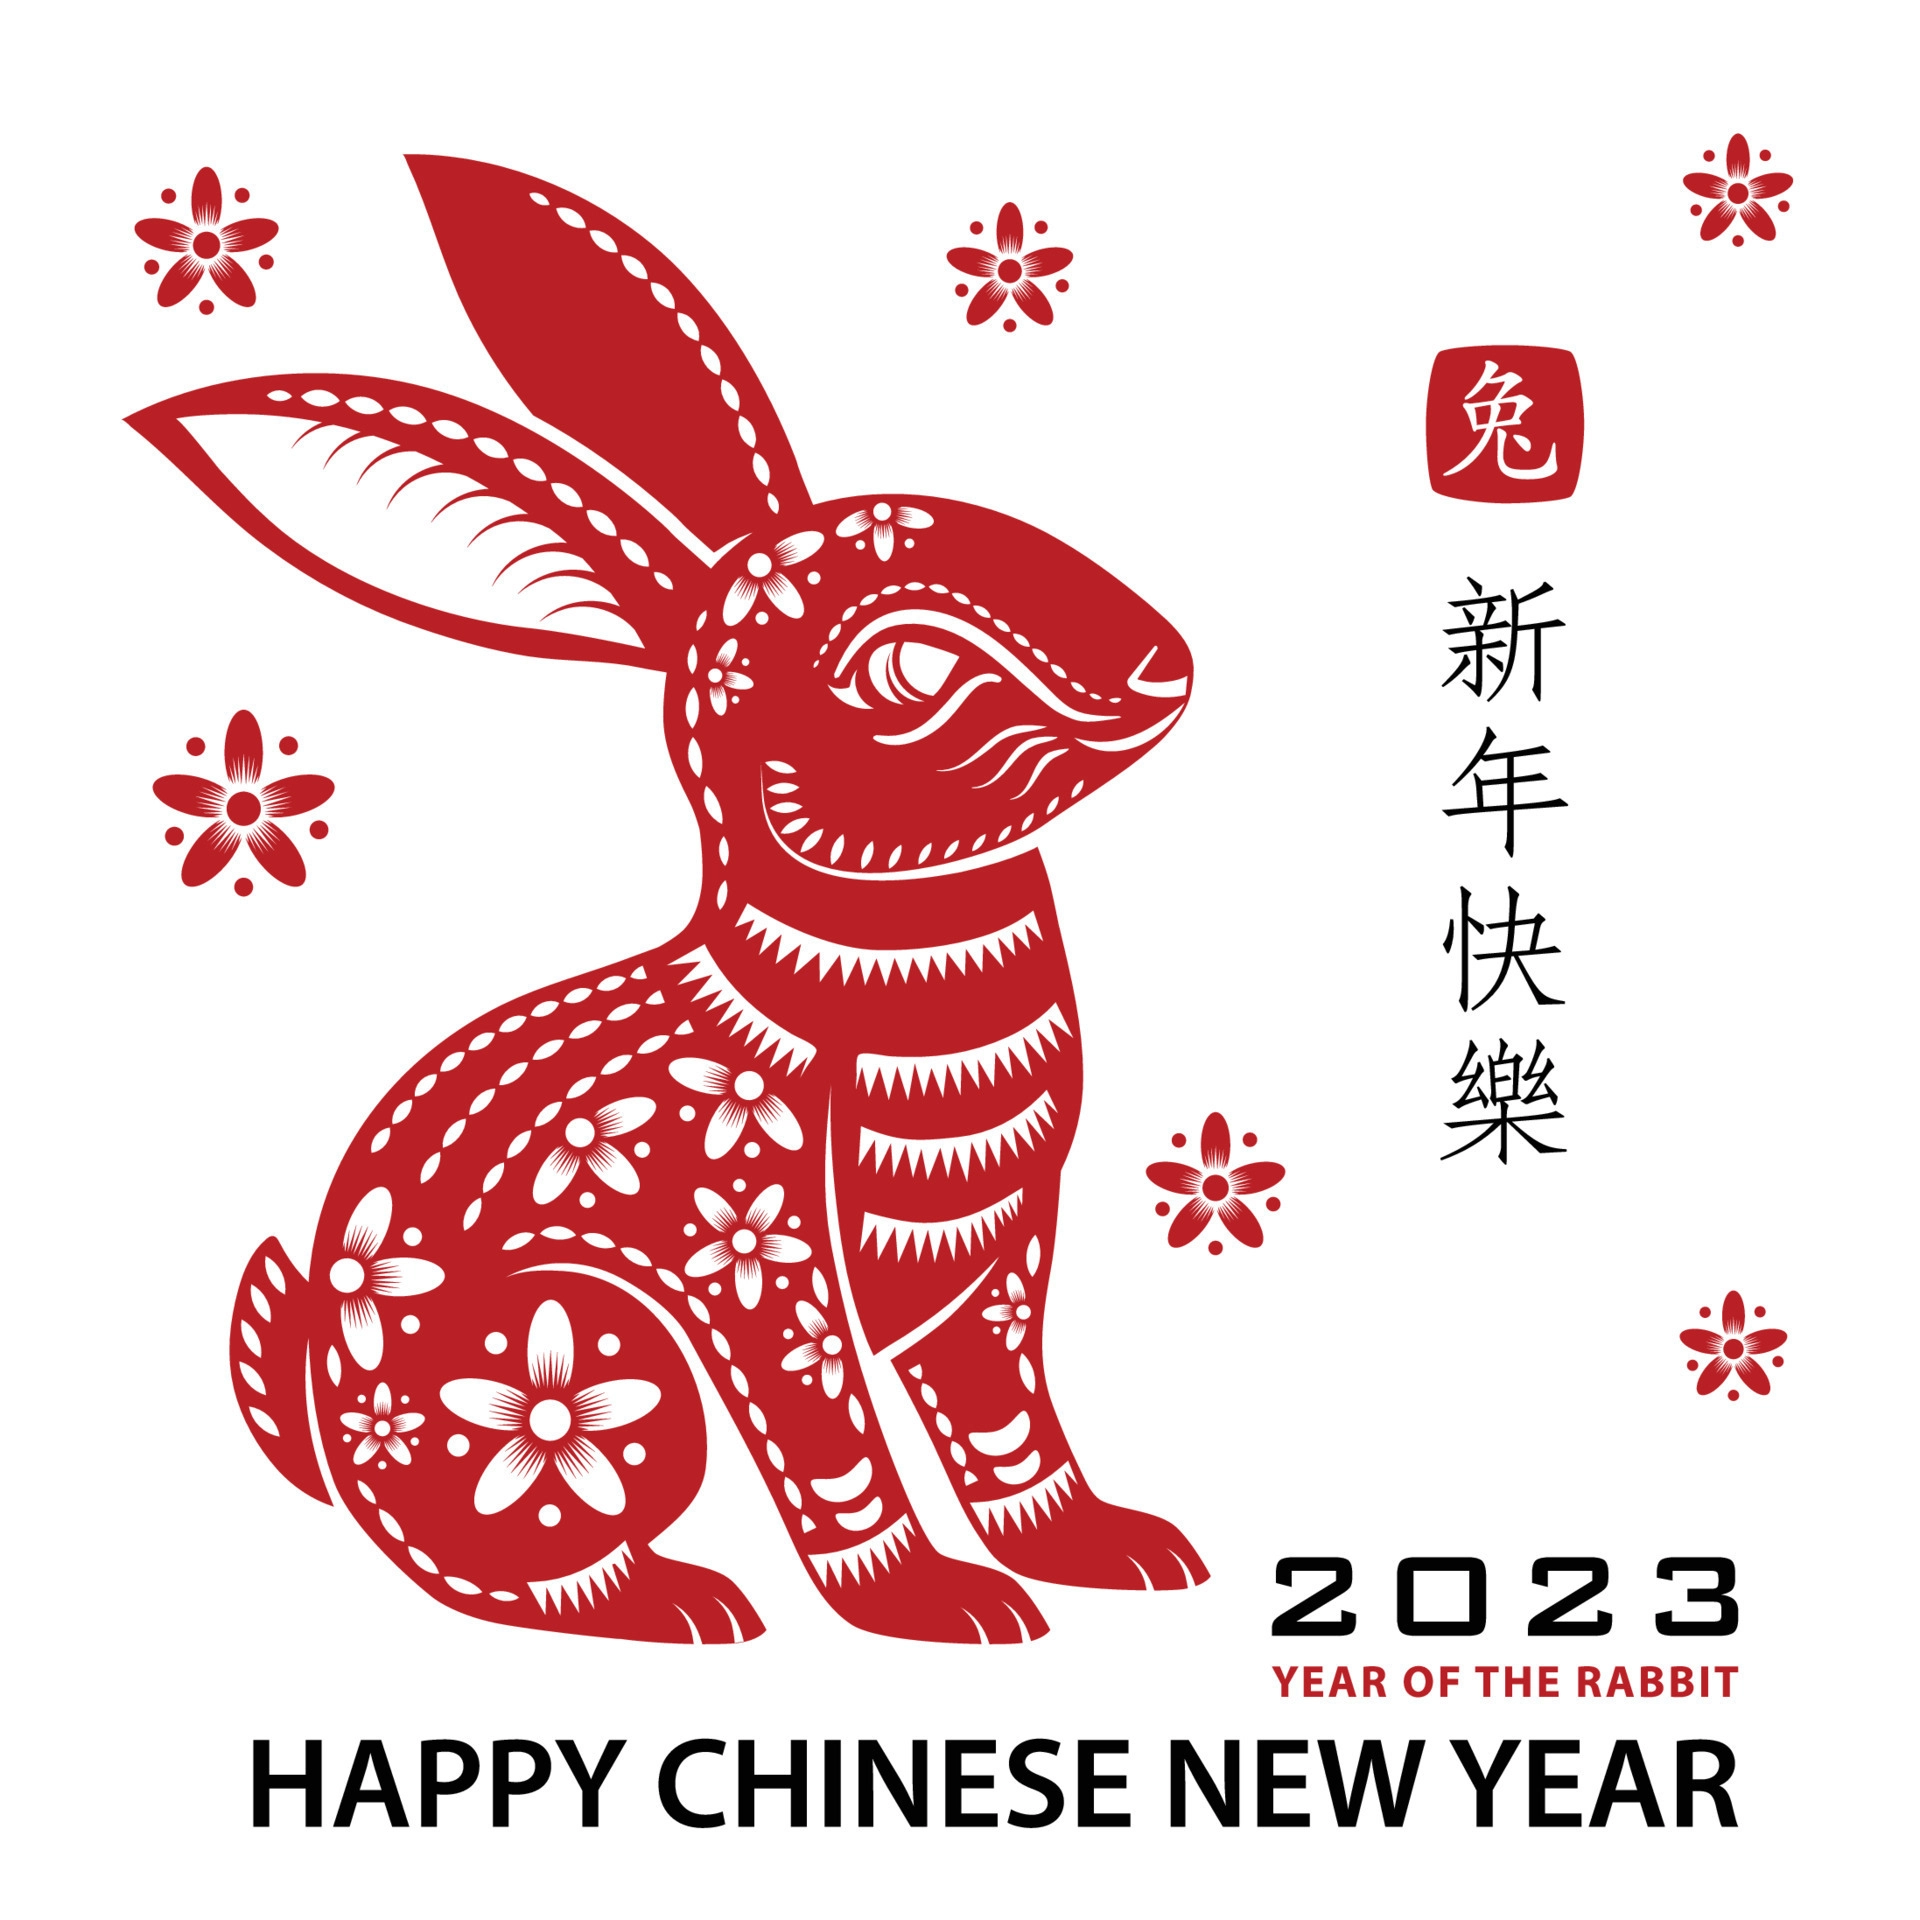 Chinesische Neujahrsgrüße und -wünsche 2023